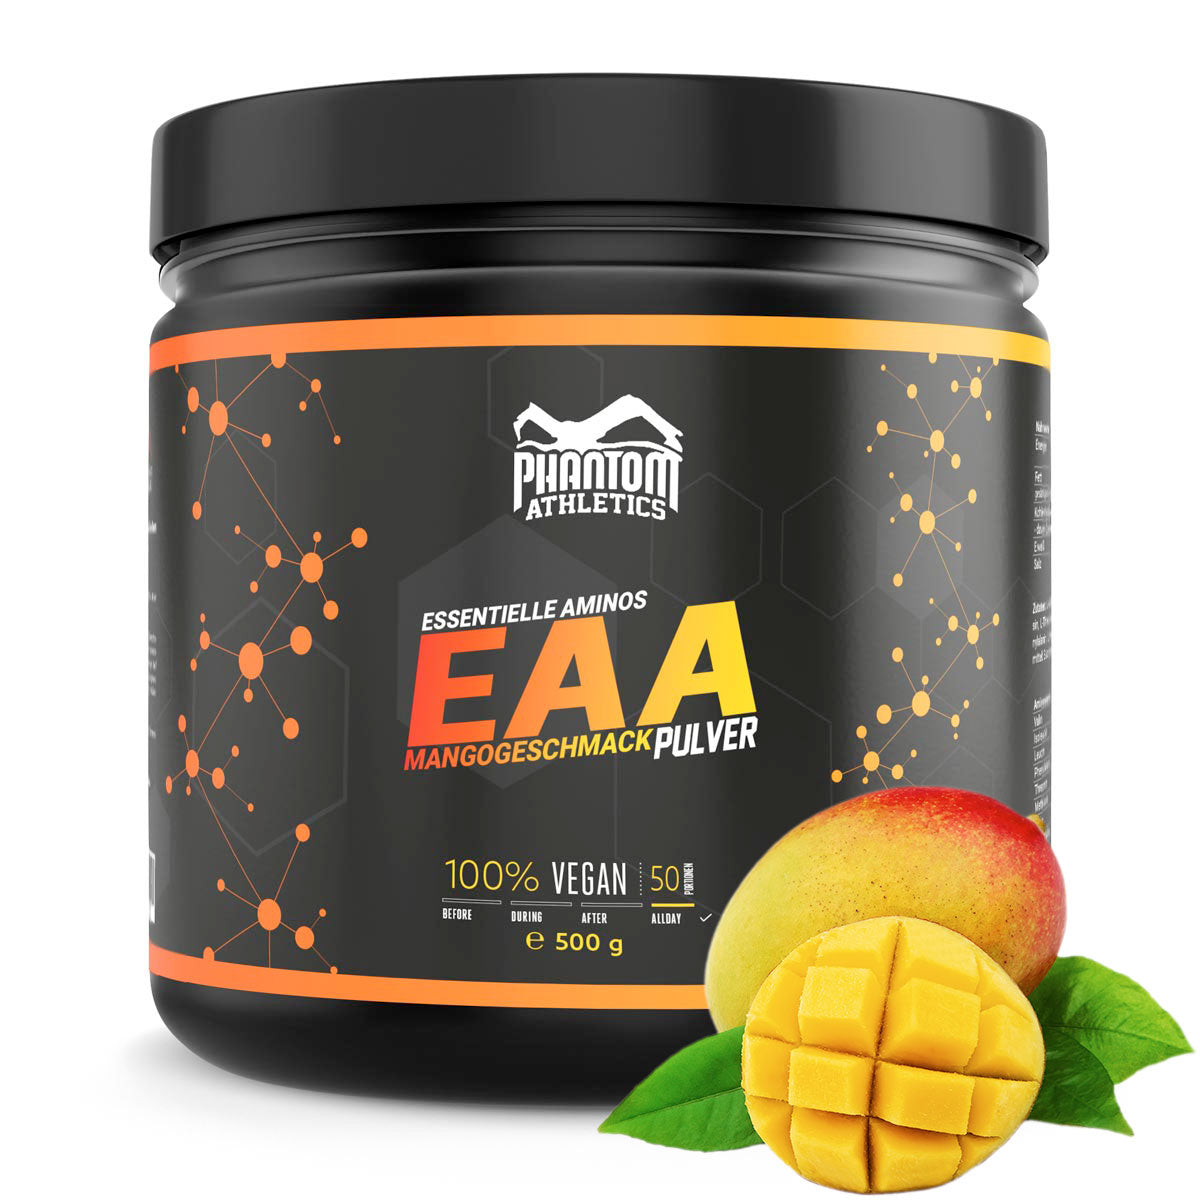 Phantom EAA - Essentielle Aminosäuren mit Mango  Geschmack. Für eine optimale Versorgung im Kampfsport.